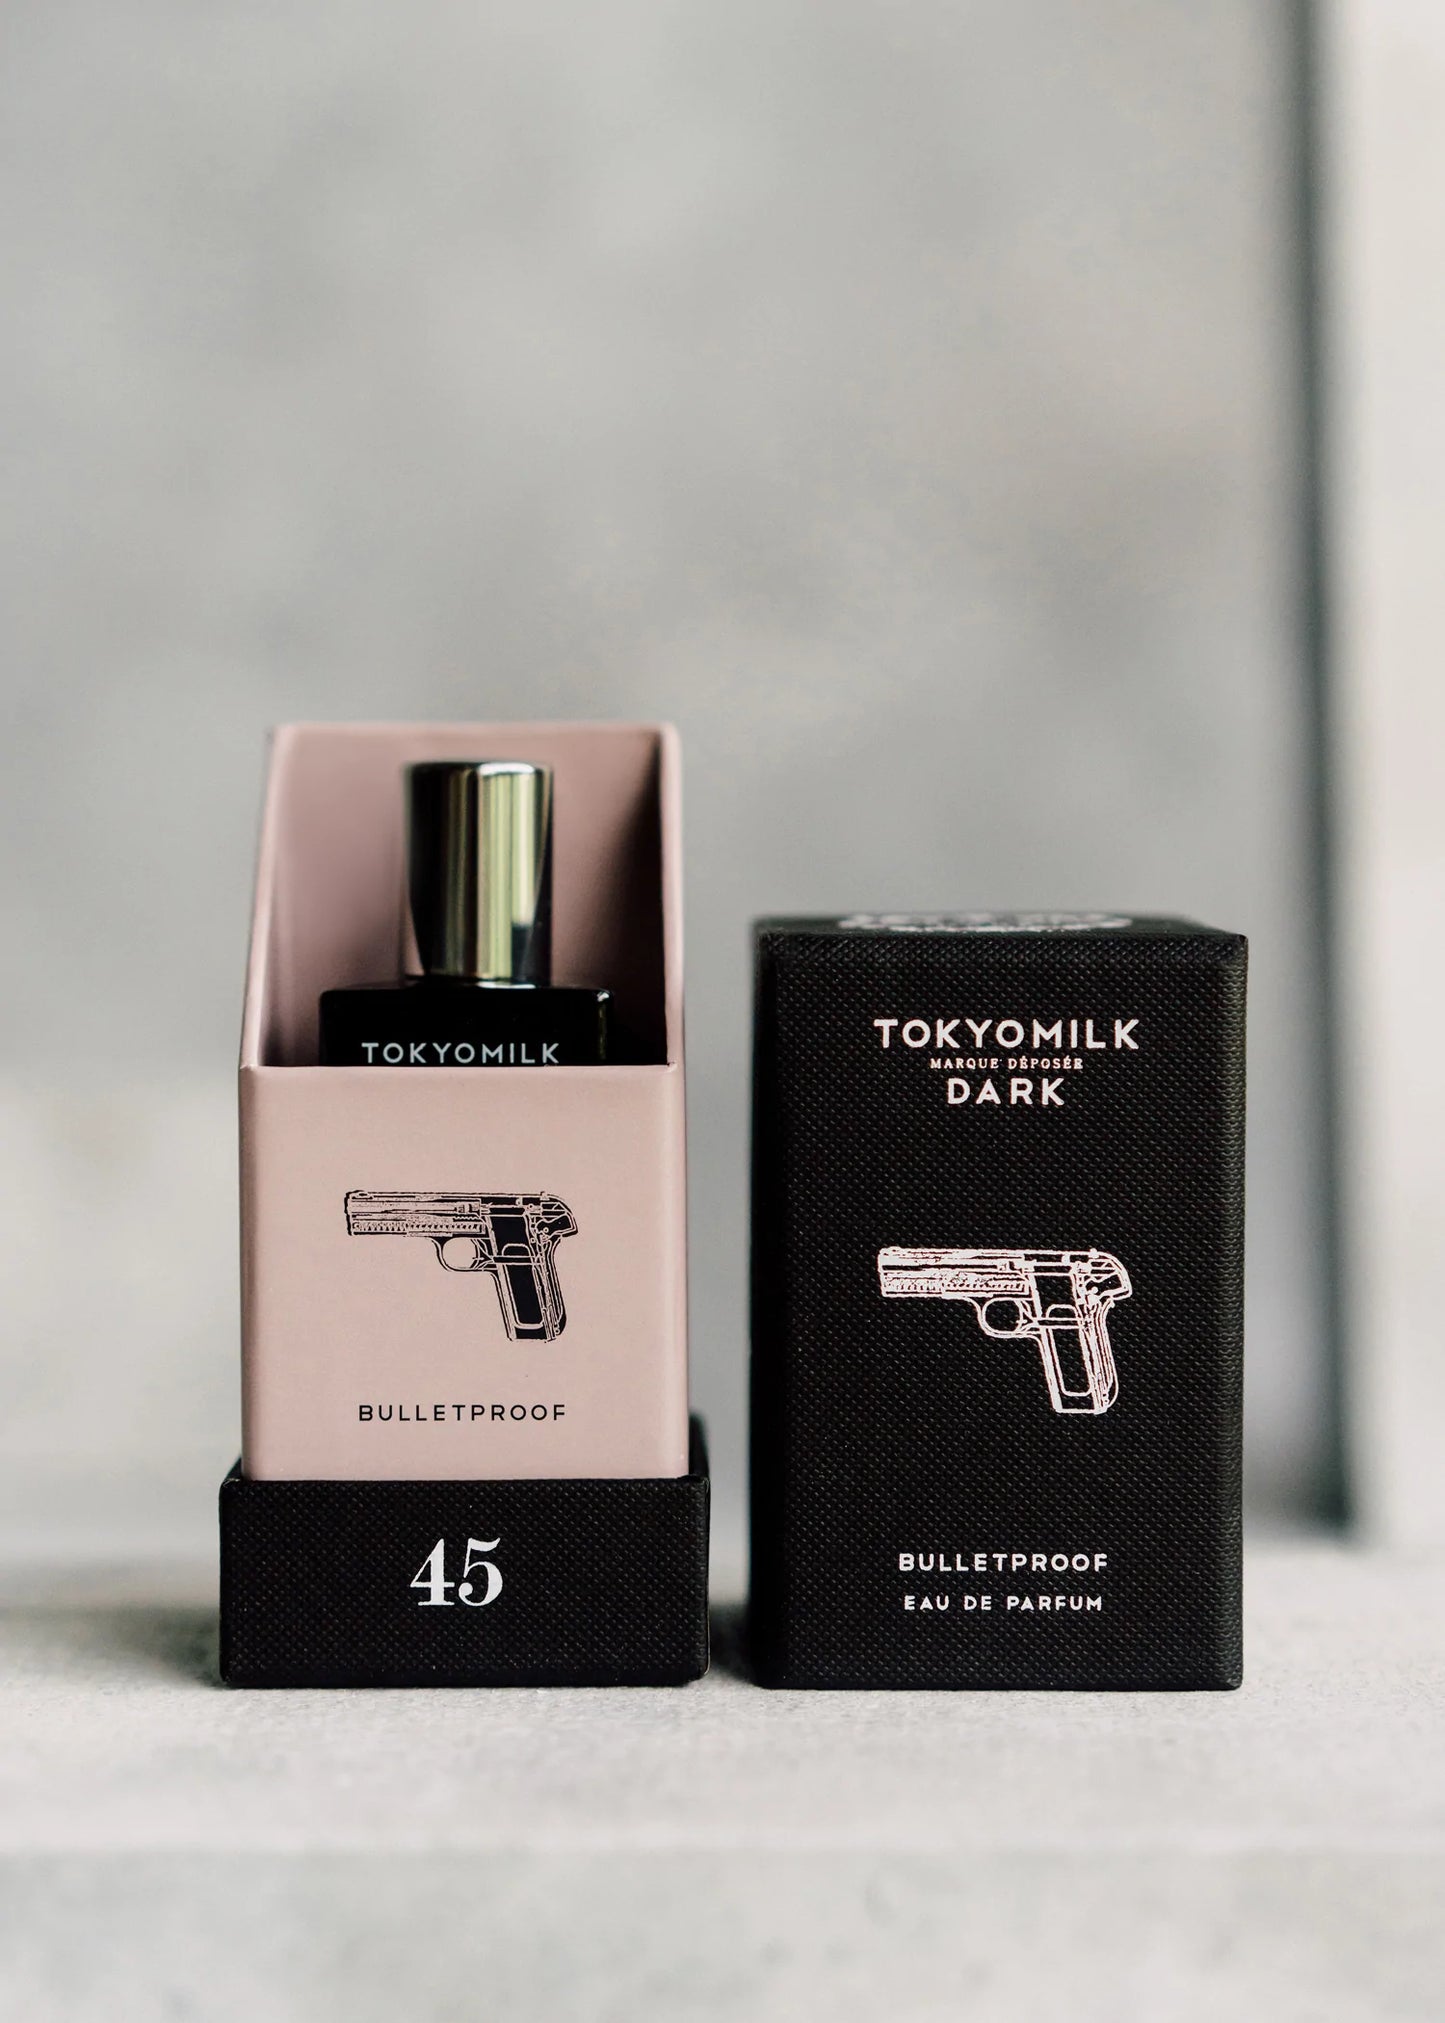 Tokyomilk Bulletproof Parfum